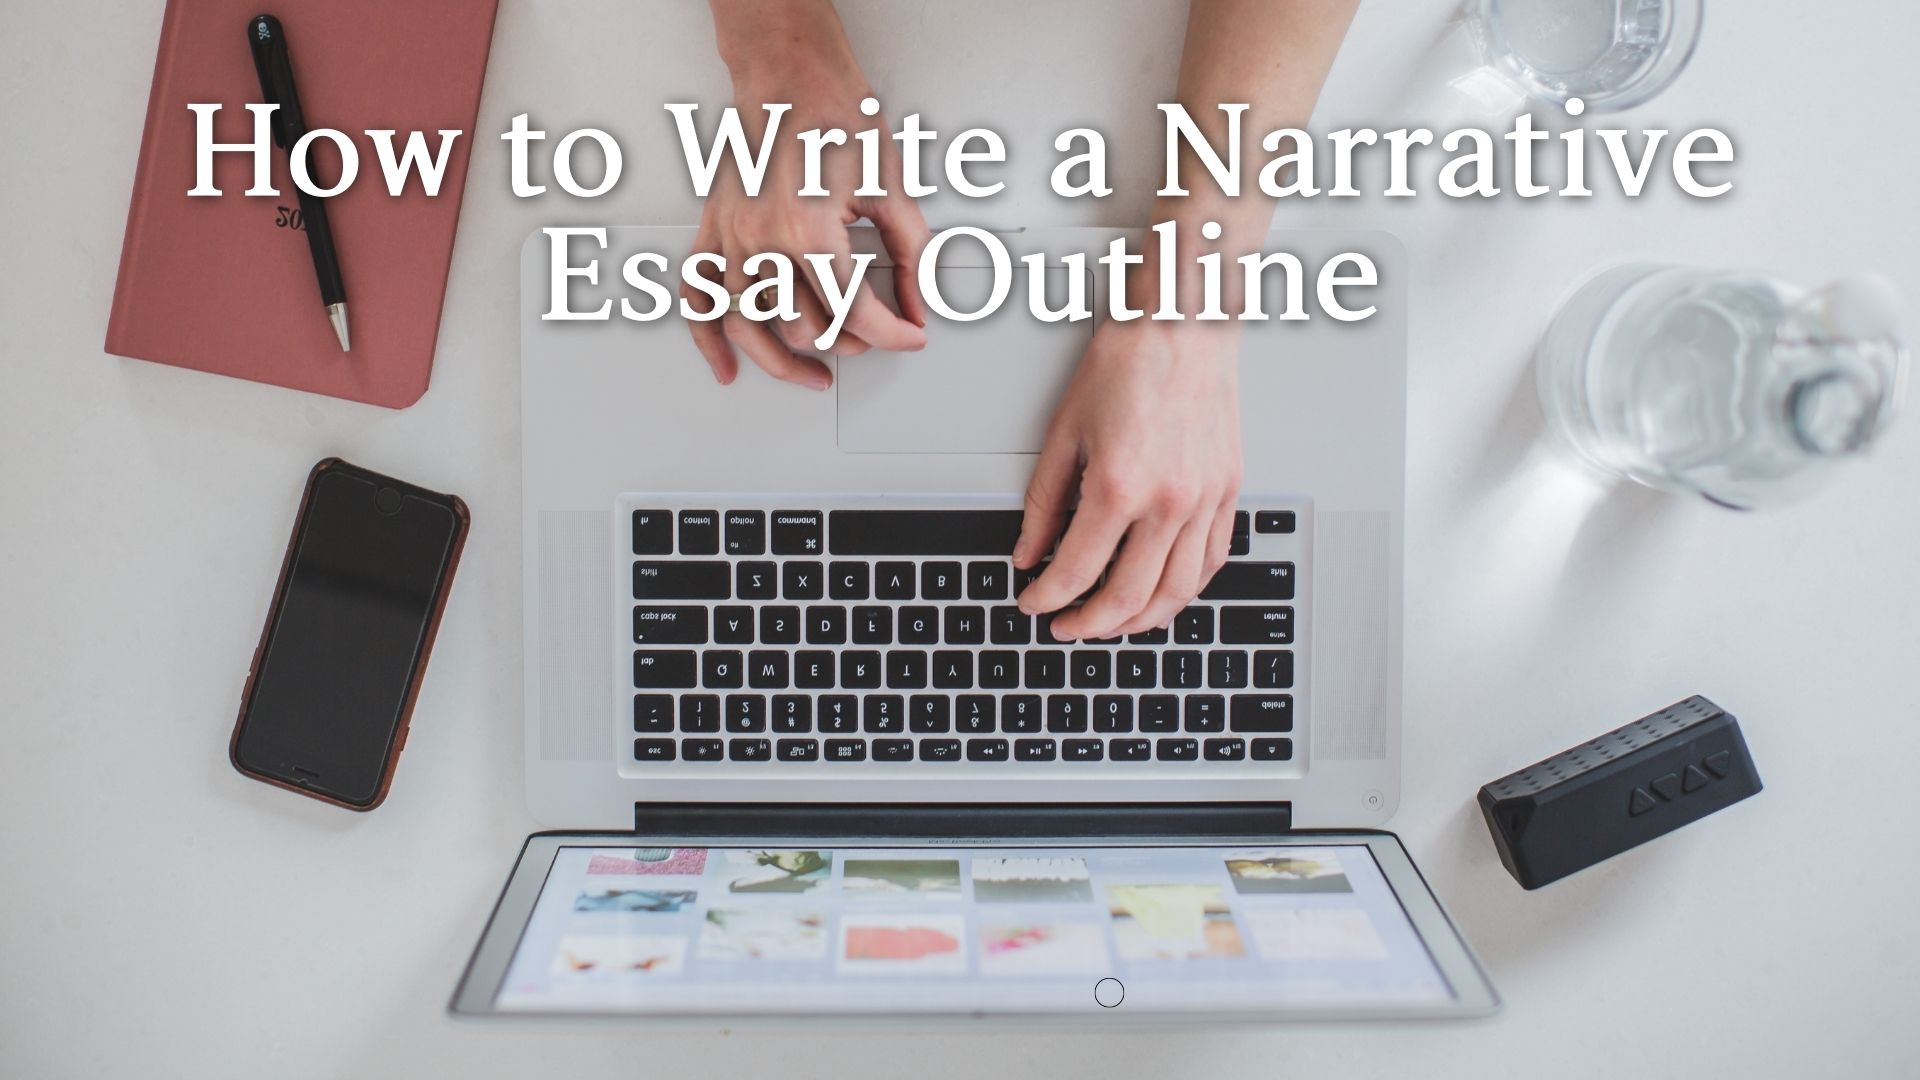 narrative essay outline